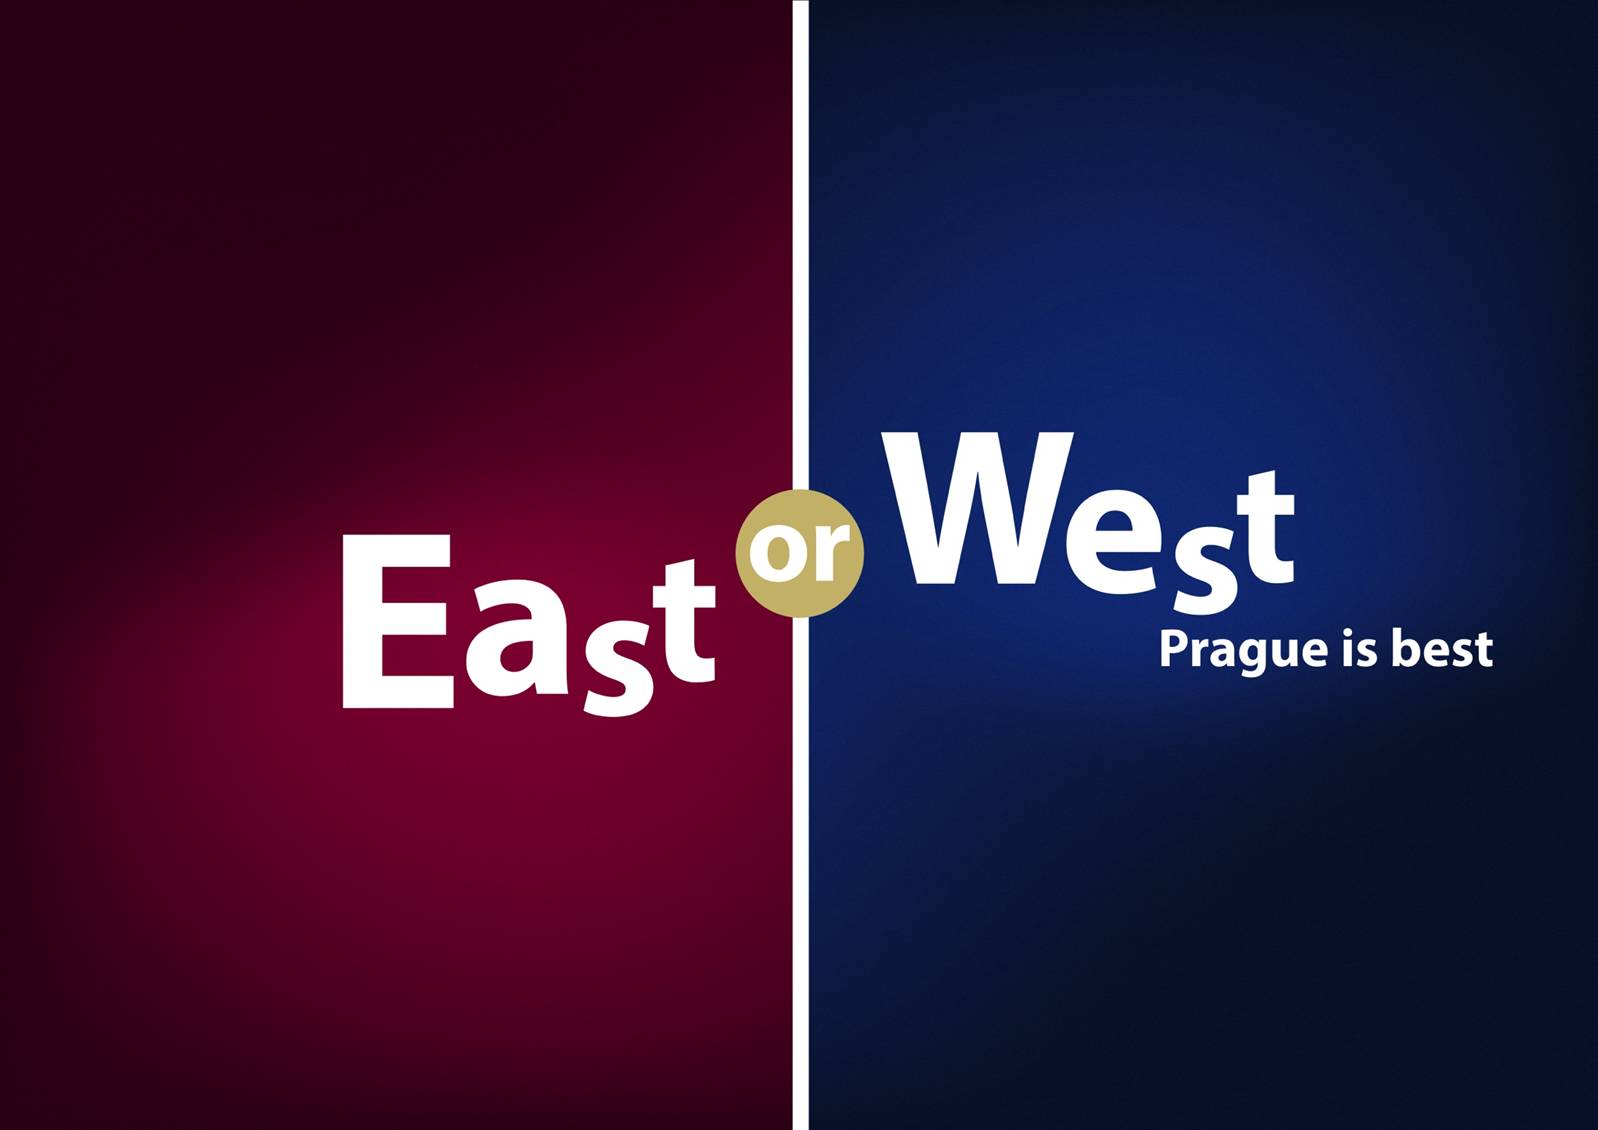 East or West, Prague is Best